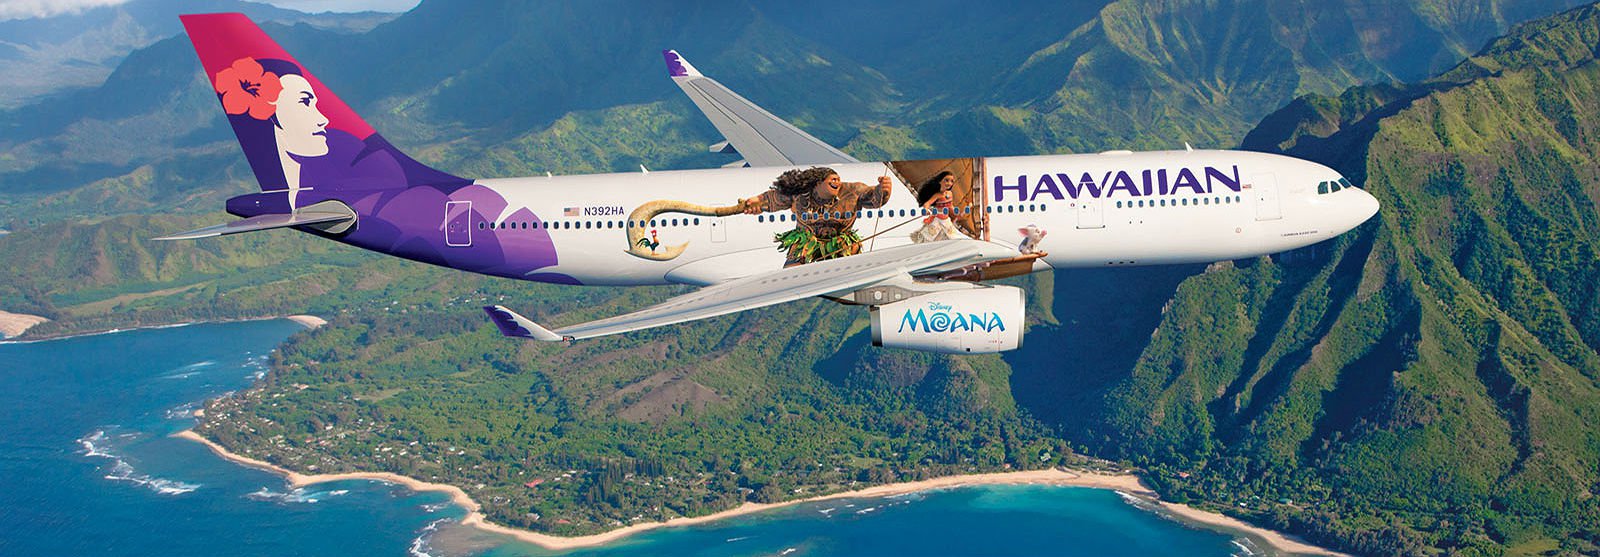 Airbus A330 da Hawaiian Airlines estilizado com personagem da animao Moana 